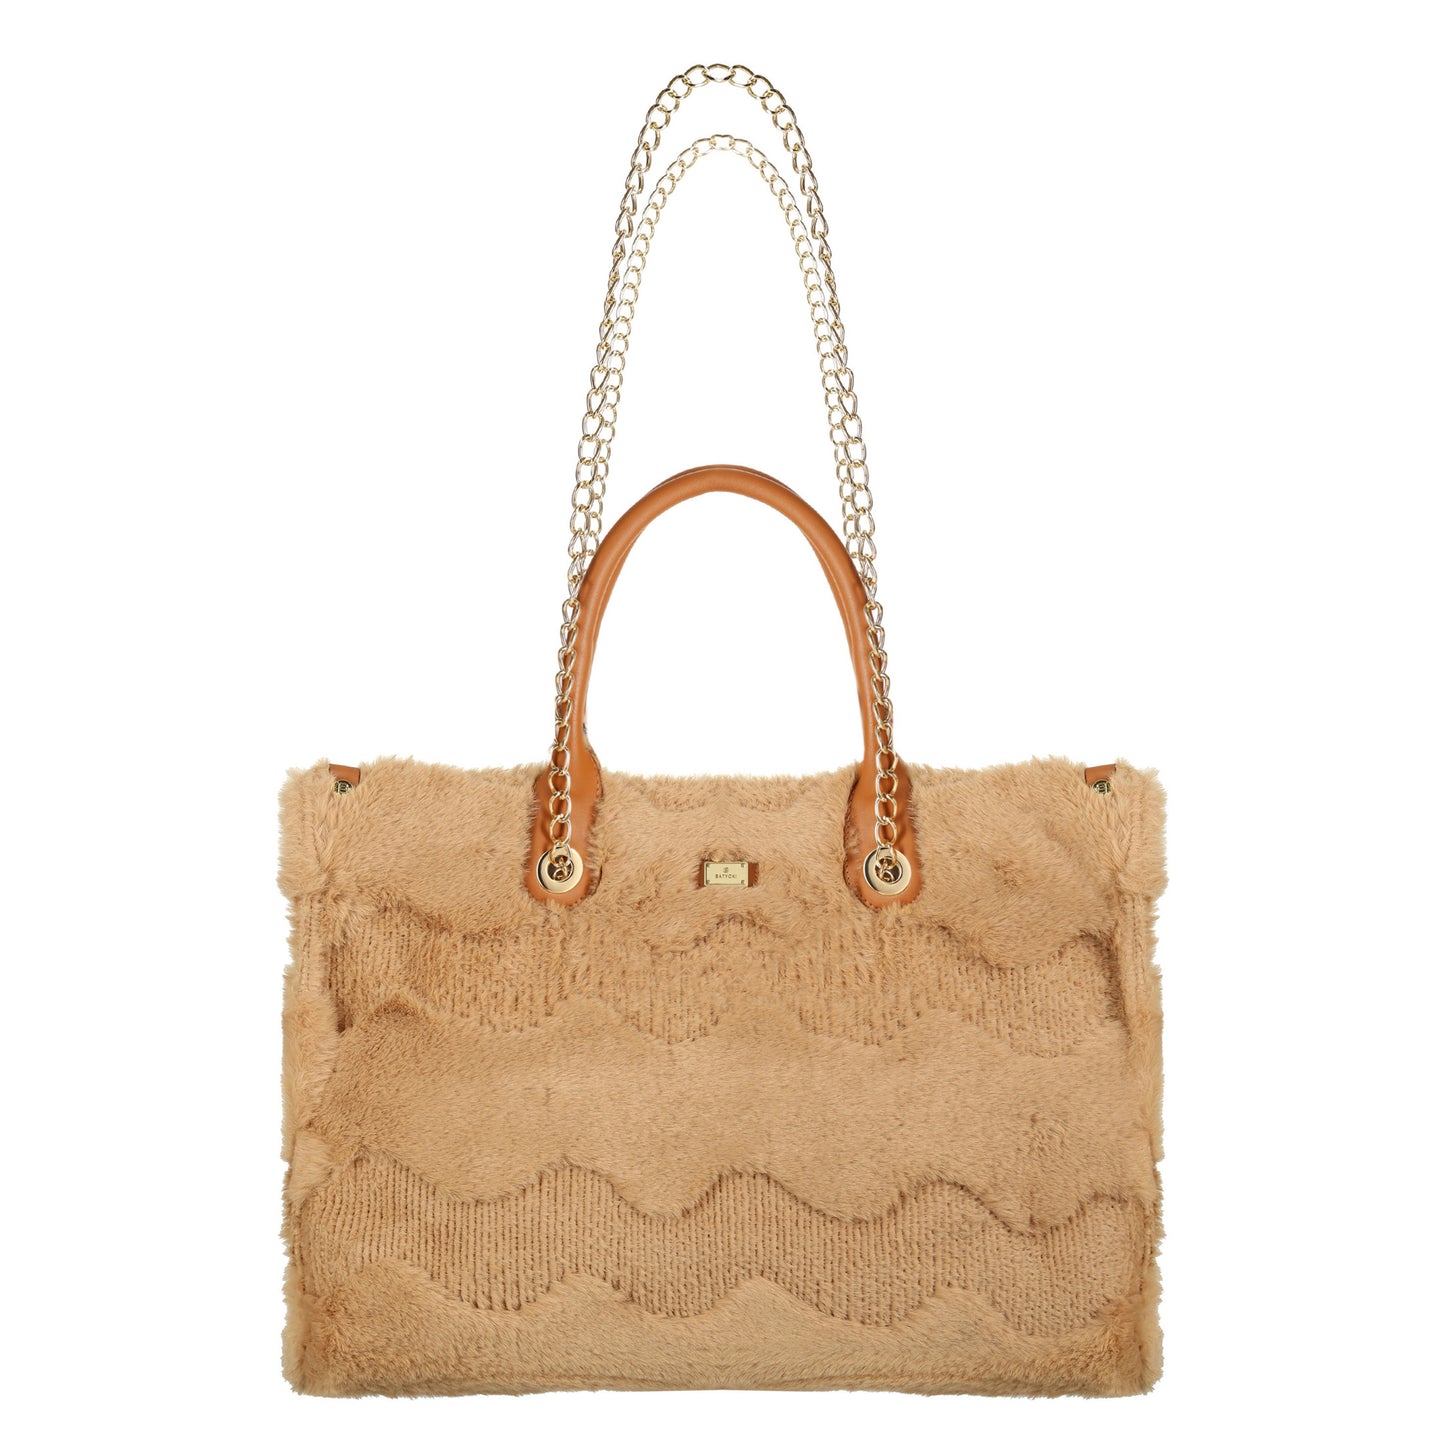 FUSSIE CAMEL women's handbag